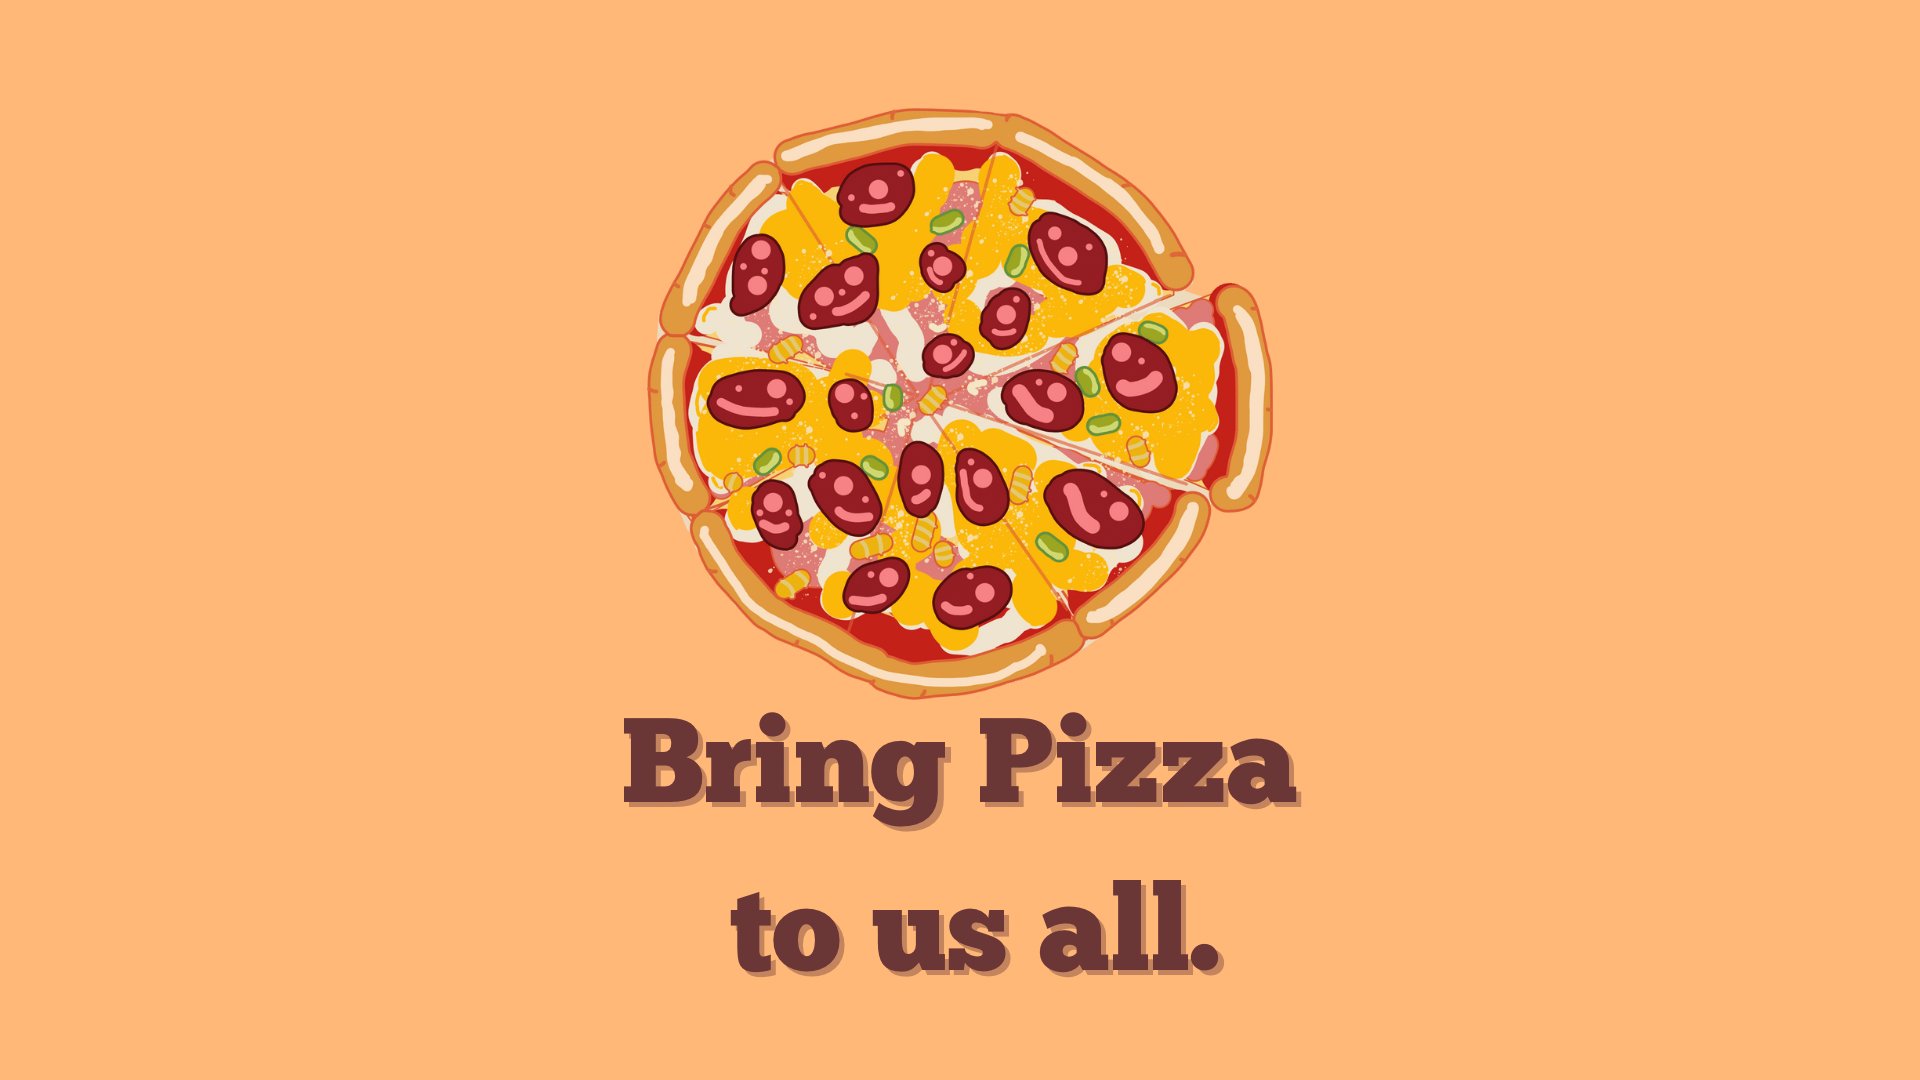 ภาพประกอบไอเดีย Bring Pizza to us all นำพิซซ่าให้เรา